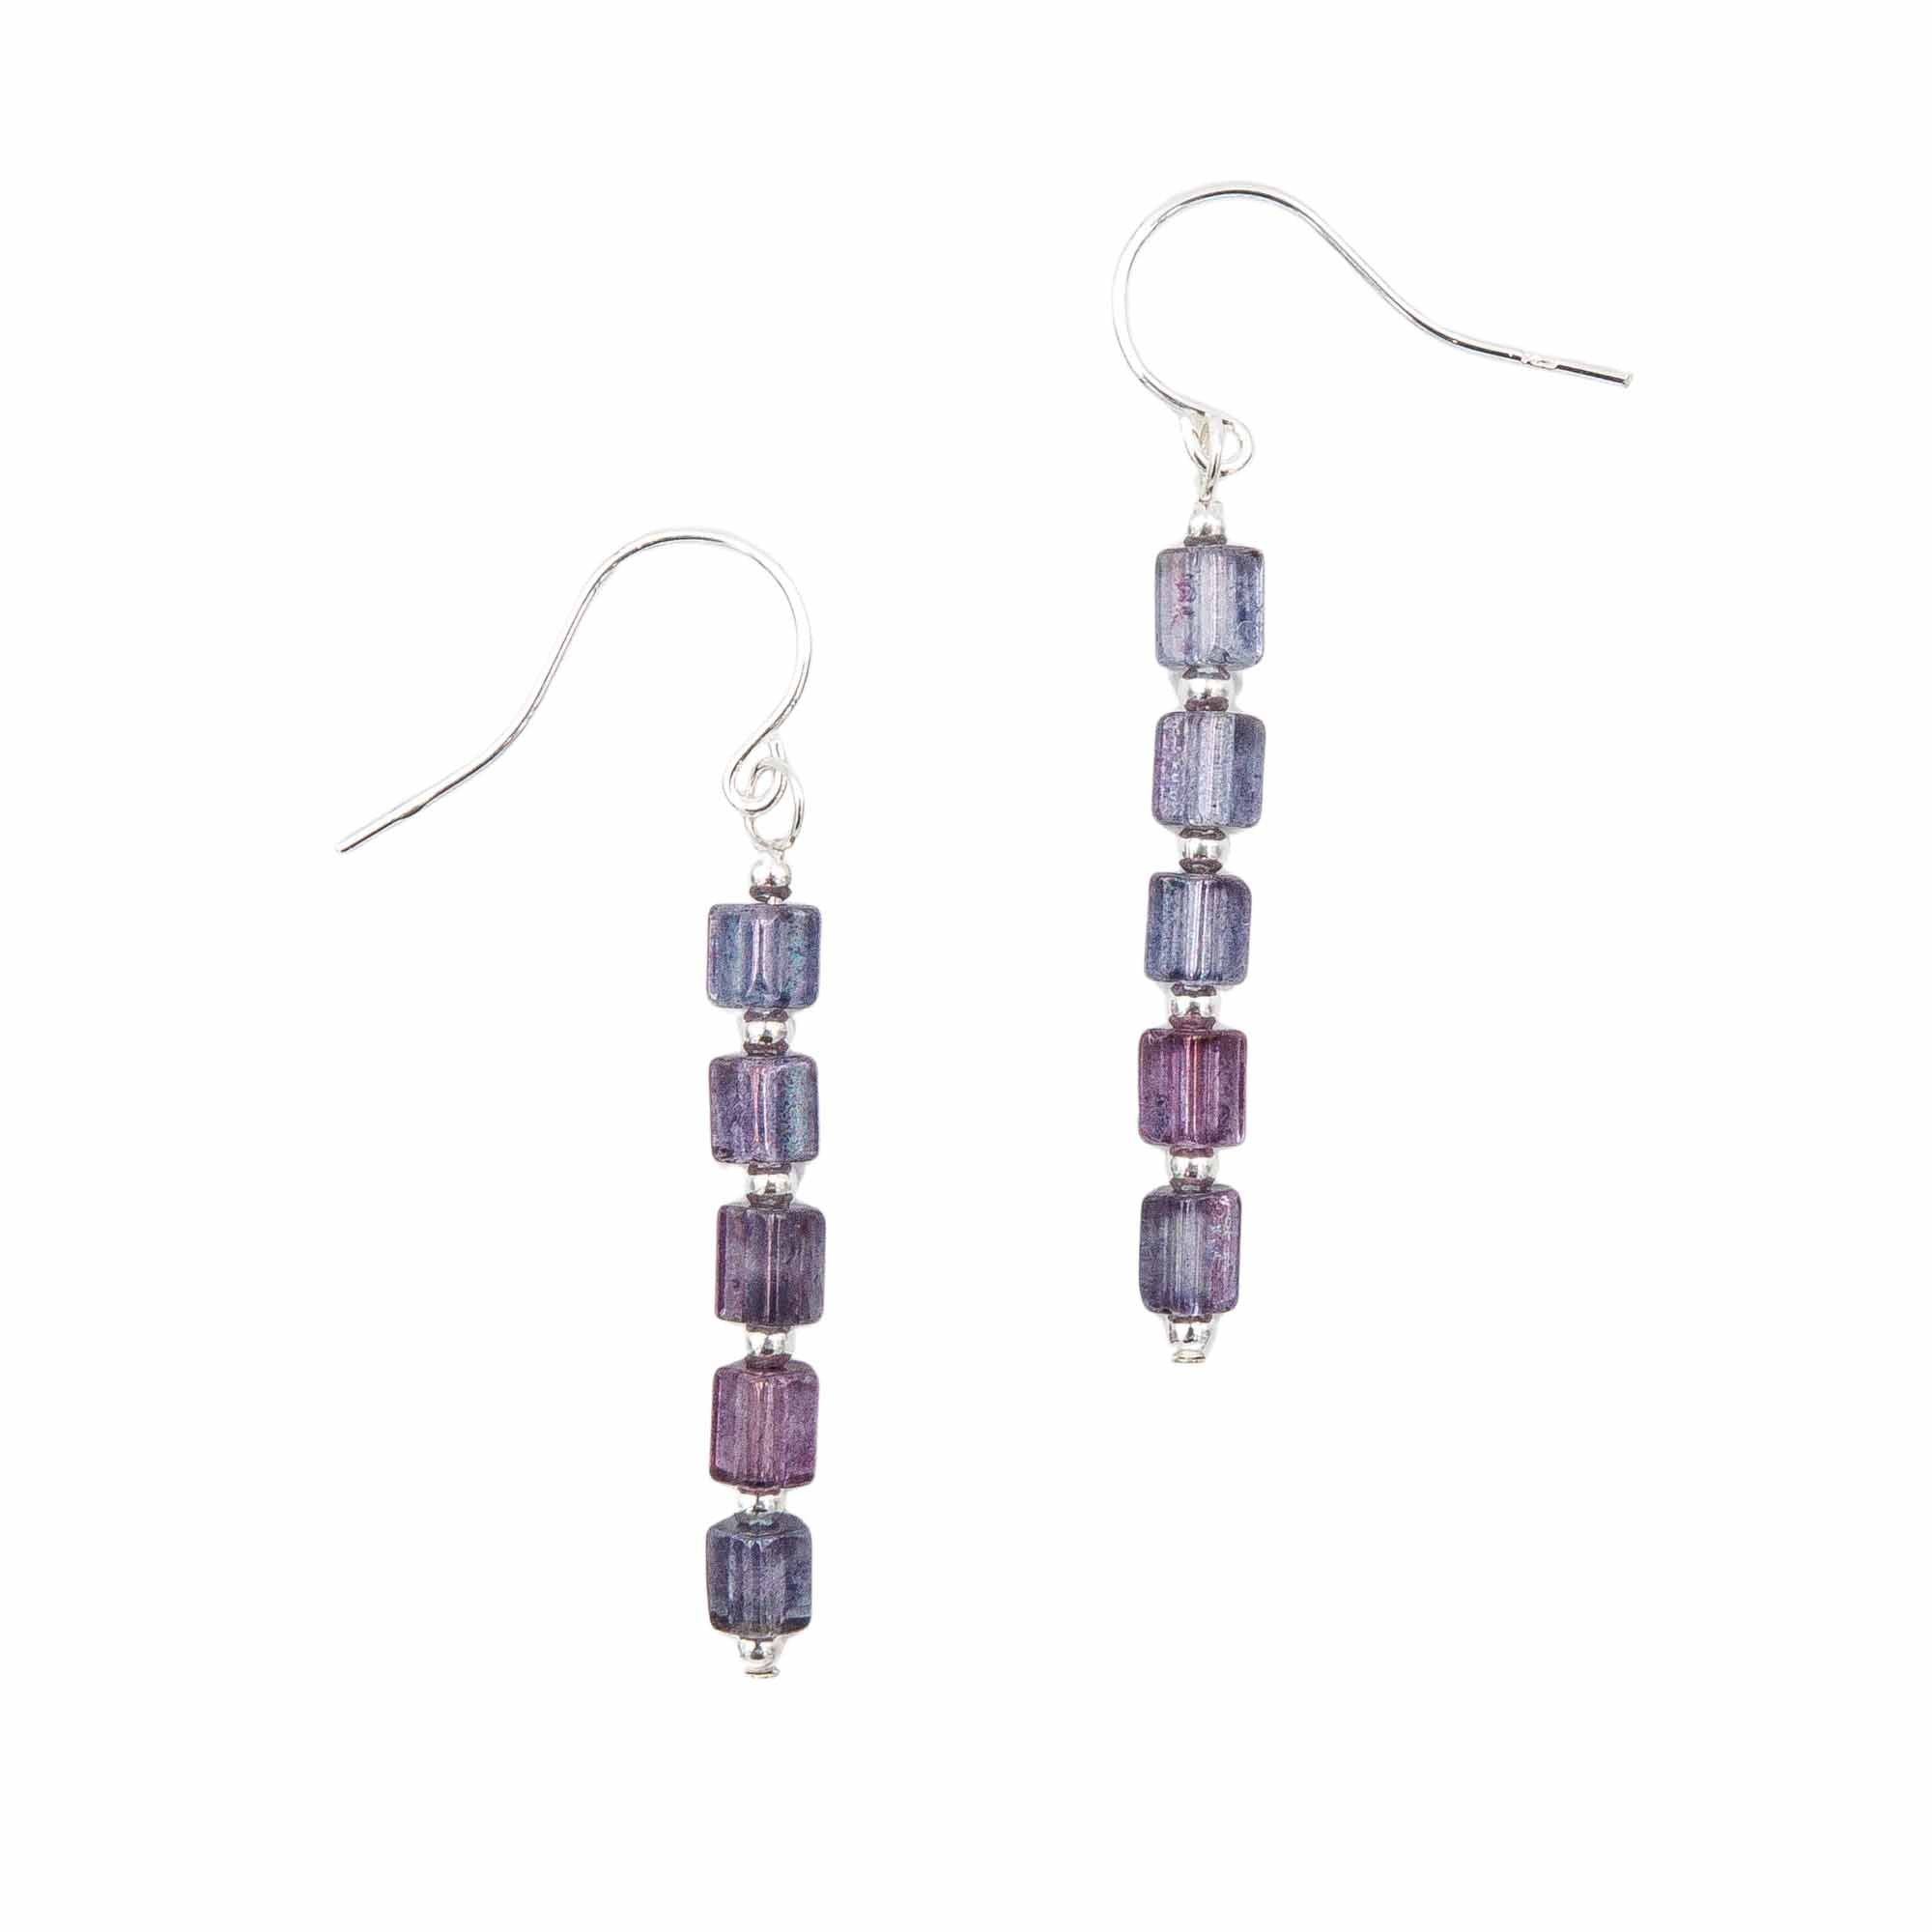 Purple earrings, necklaces & bracelets handmade in Colorado by